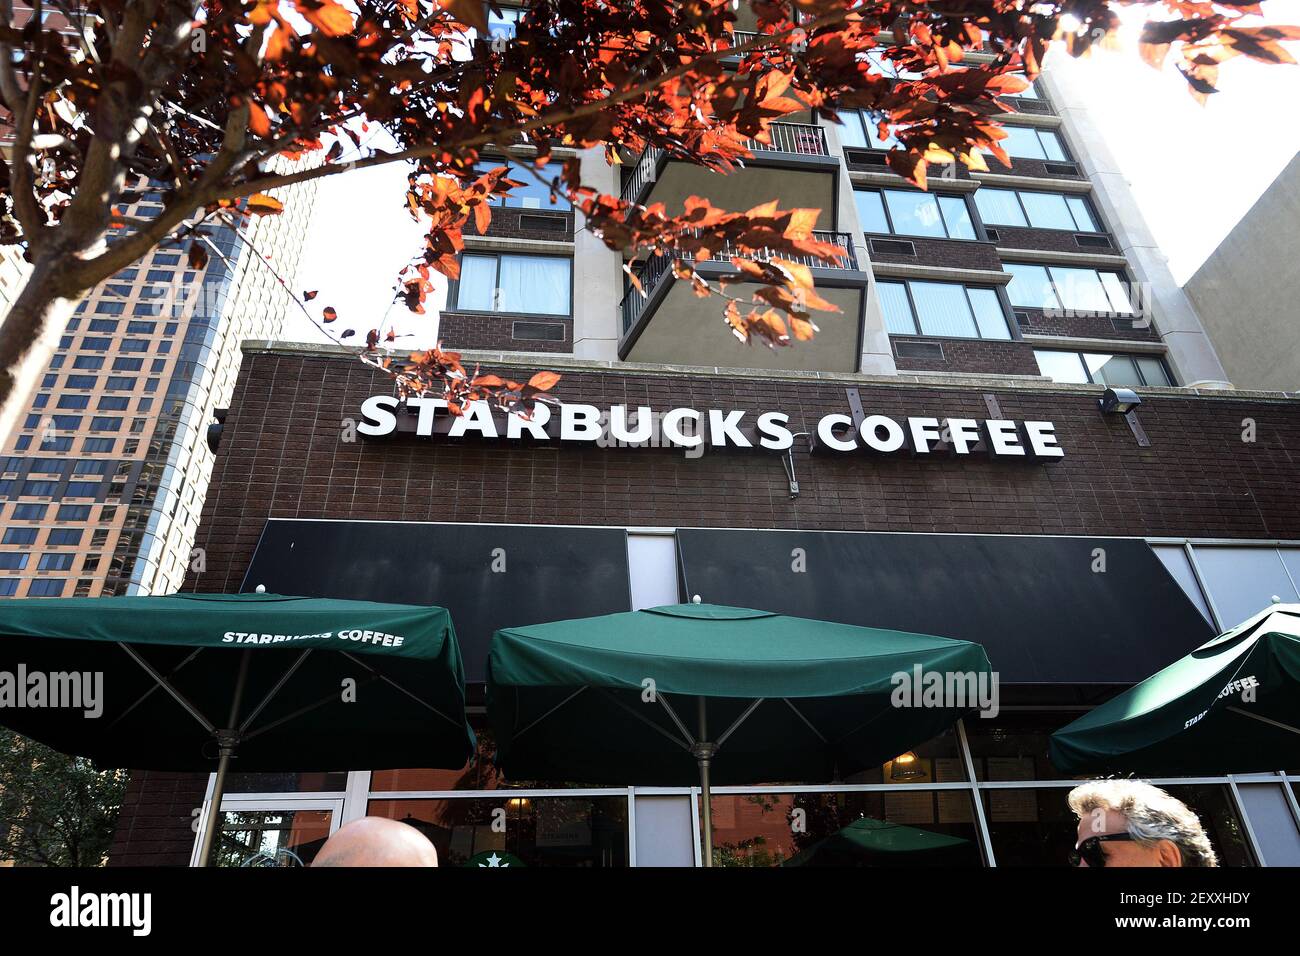 Señalización de una cafetería Starbucks de Nueva York, Upper East Side, la  cadena de café con sede en Seattle anunció que va a aumentar el precio de  algunas de sus bebidas y